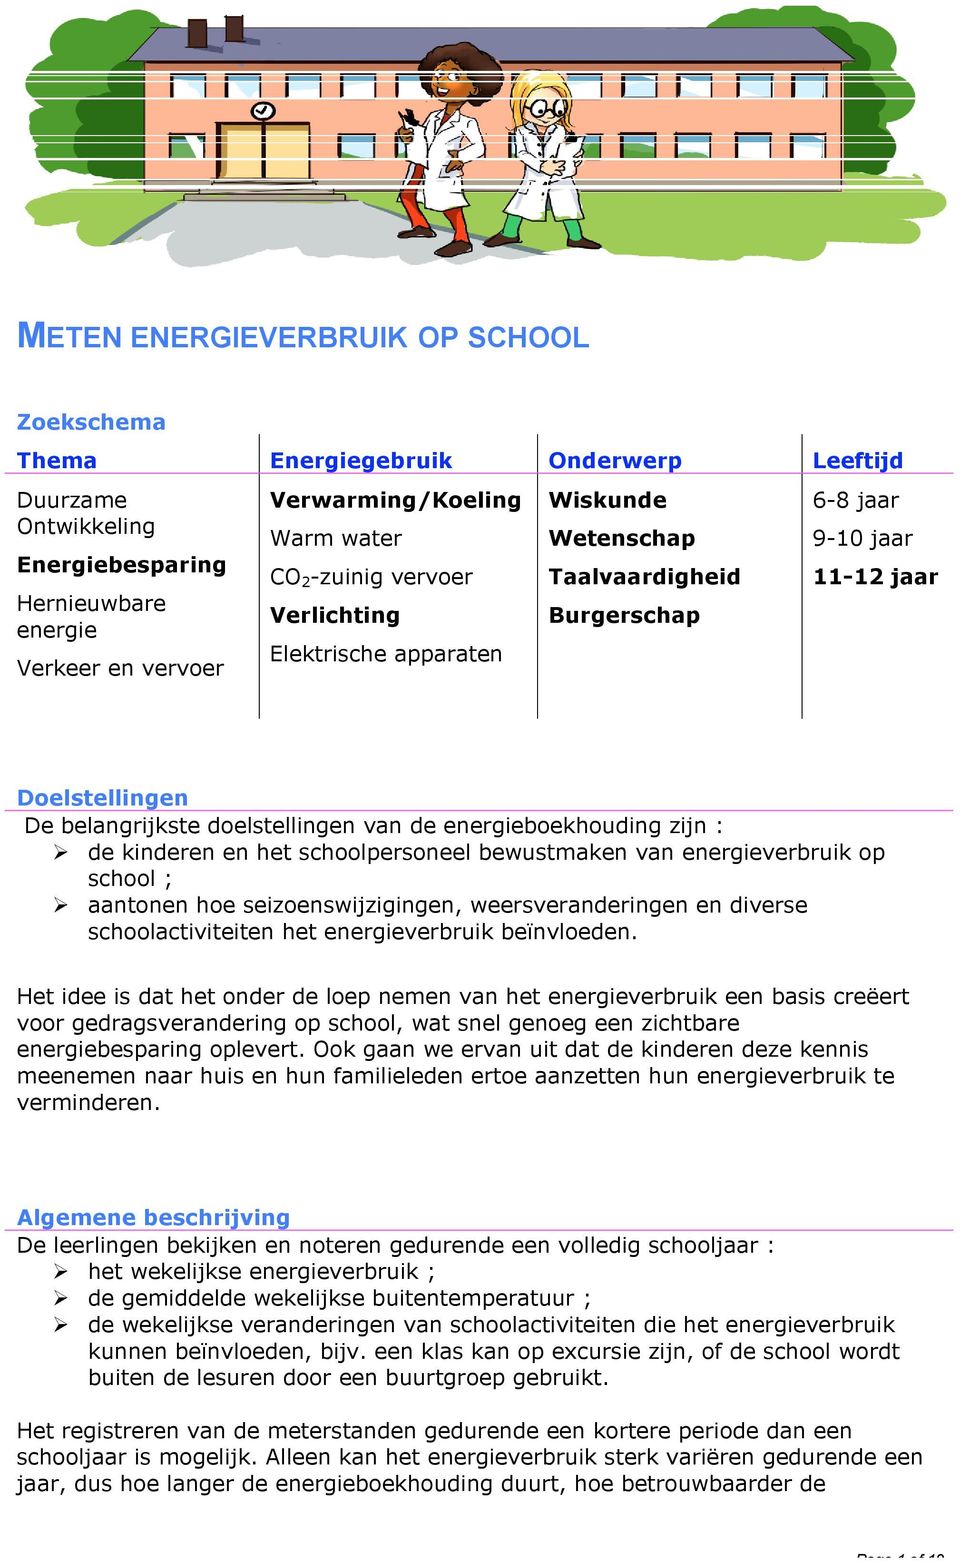 energieboekhouding zijn : de kinderen en het schoolpersoneel bewustmaken van energieverbruik op school ; aantonen hoe seizoenswijzigingen, weersveranderingen en diverse schoolactiviteiten het